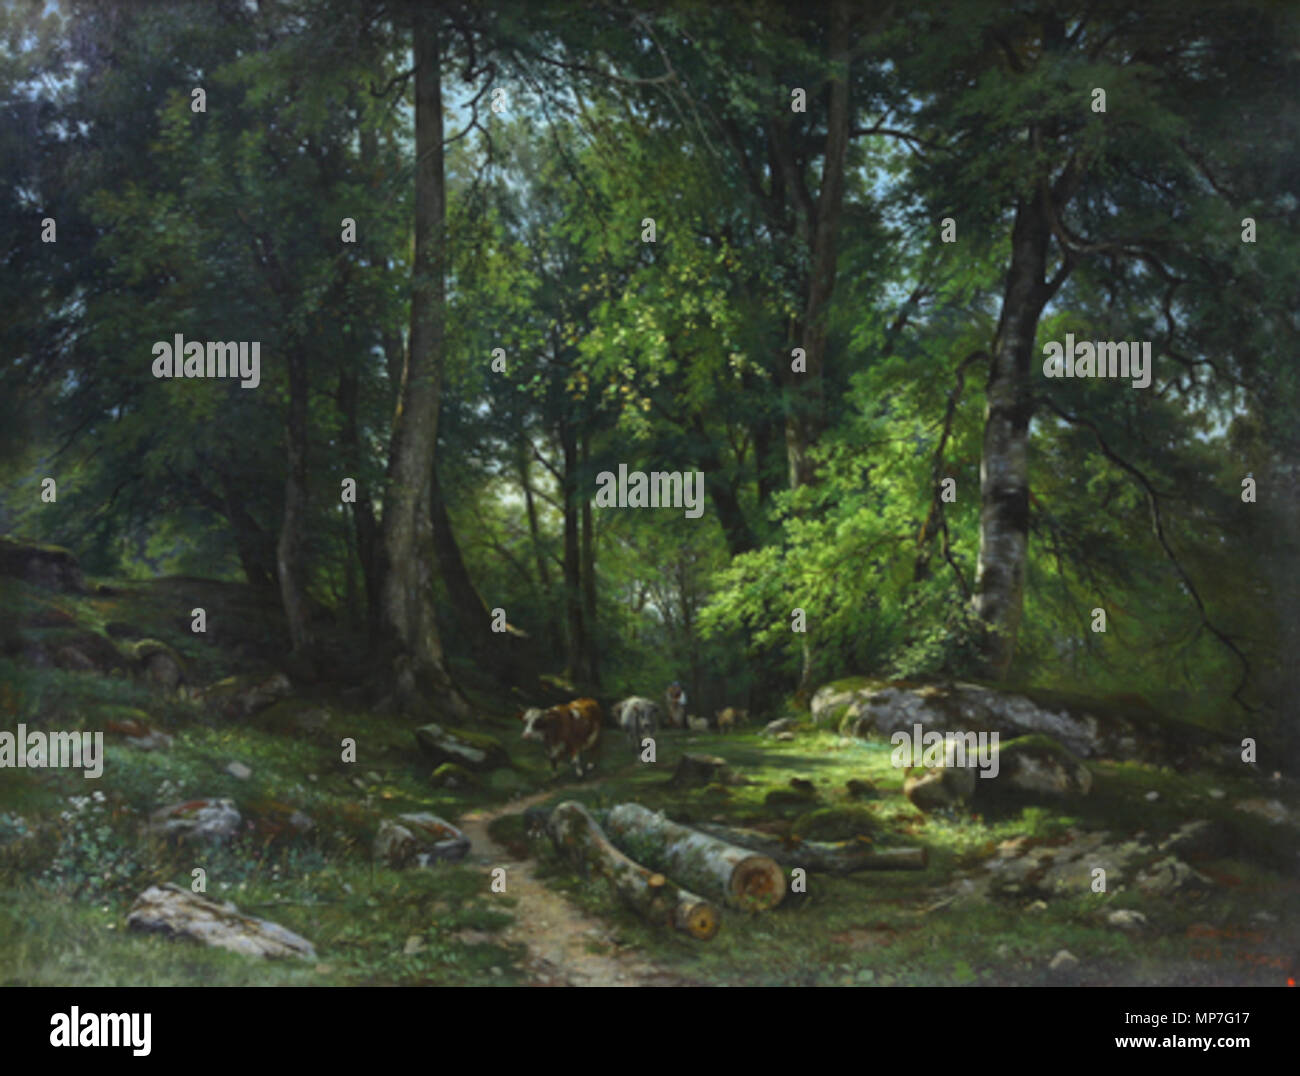 Հայերեն: Անտառում Englisch: Im Wald Русский: Вудс 1864. 679 Ivan Shishkin. Im Wald Stockfoto